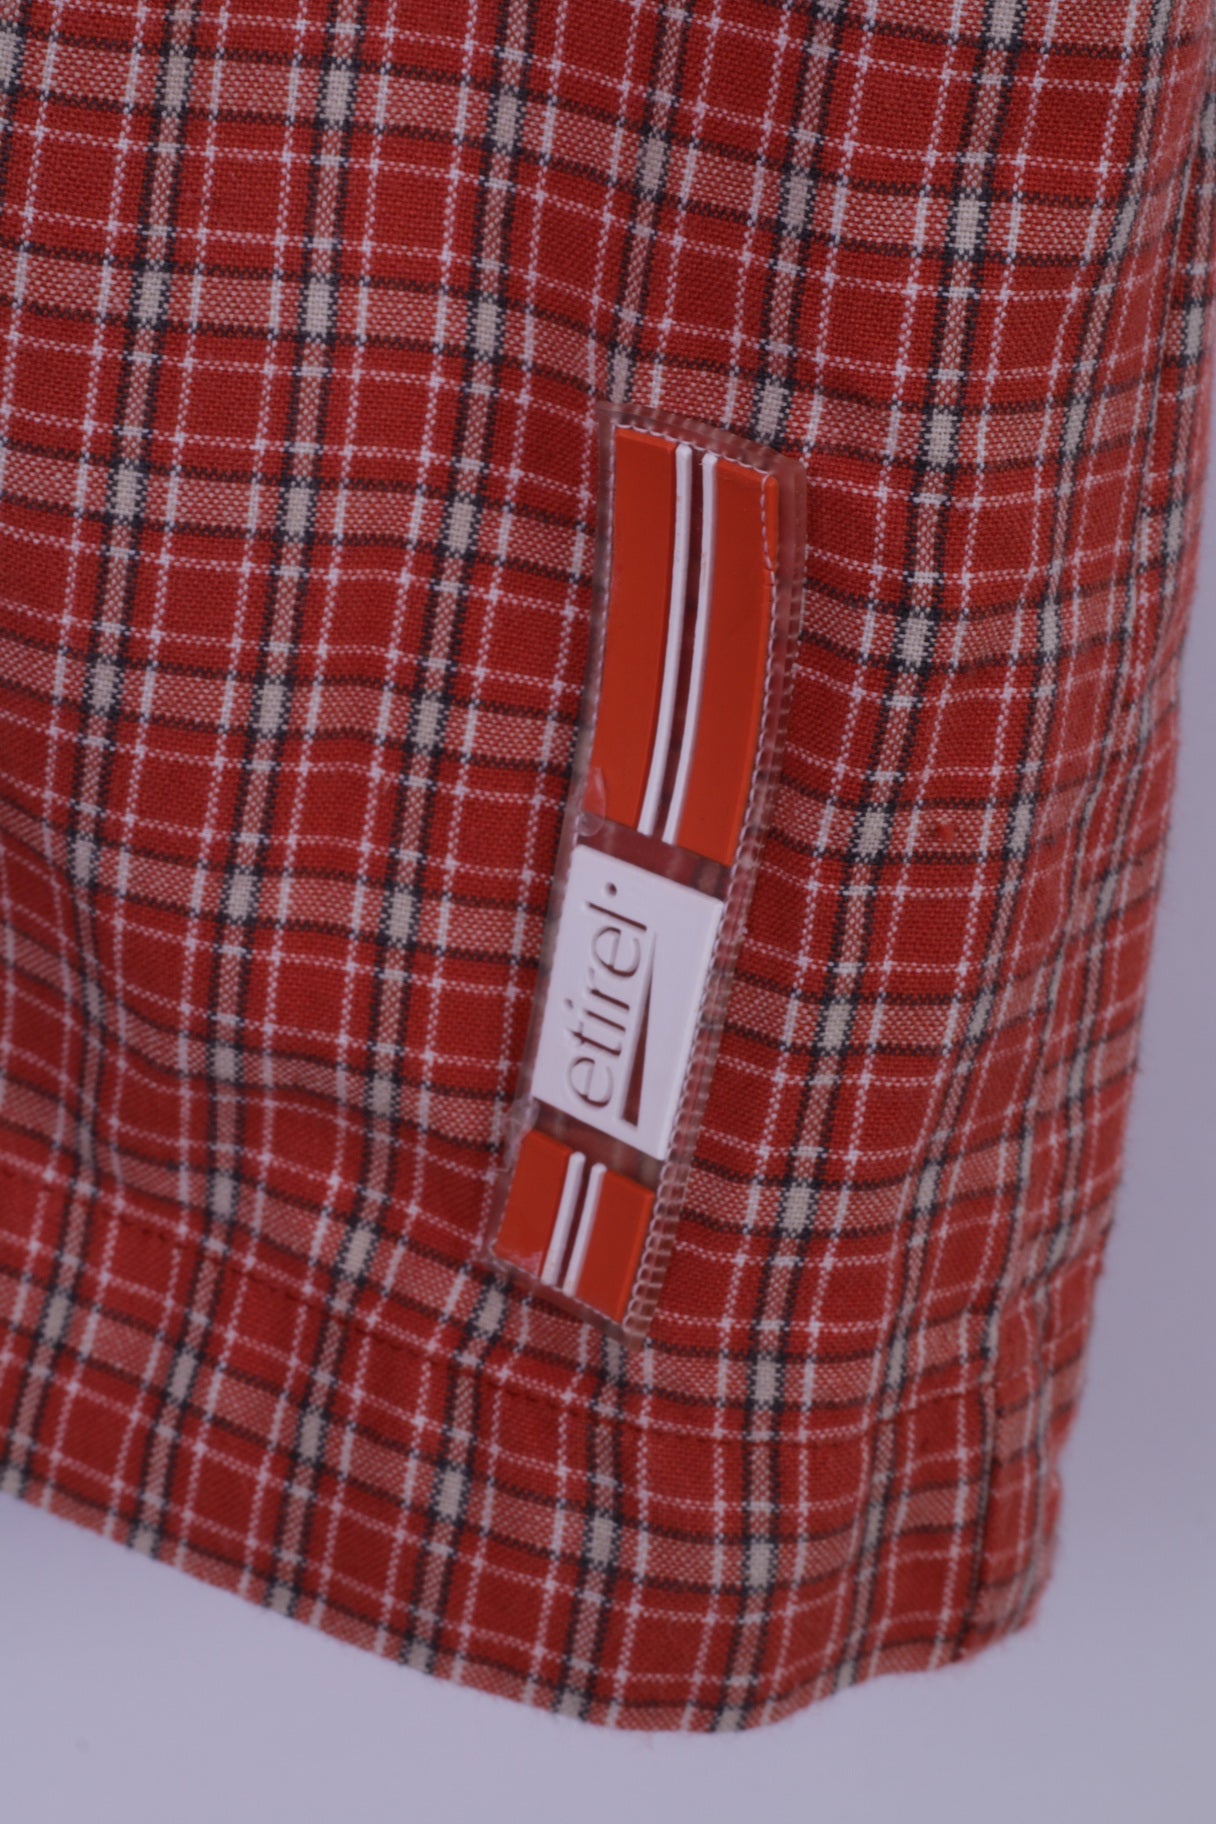 Camicia casual da uomo Etirel L, manica corta da esterno in cotone a quadri arancione con due tasche